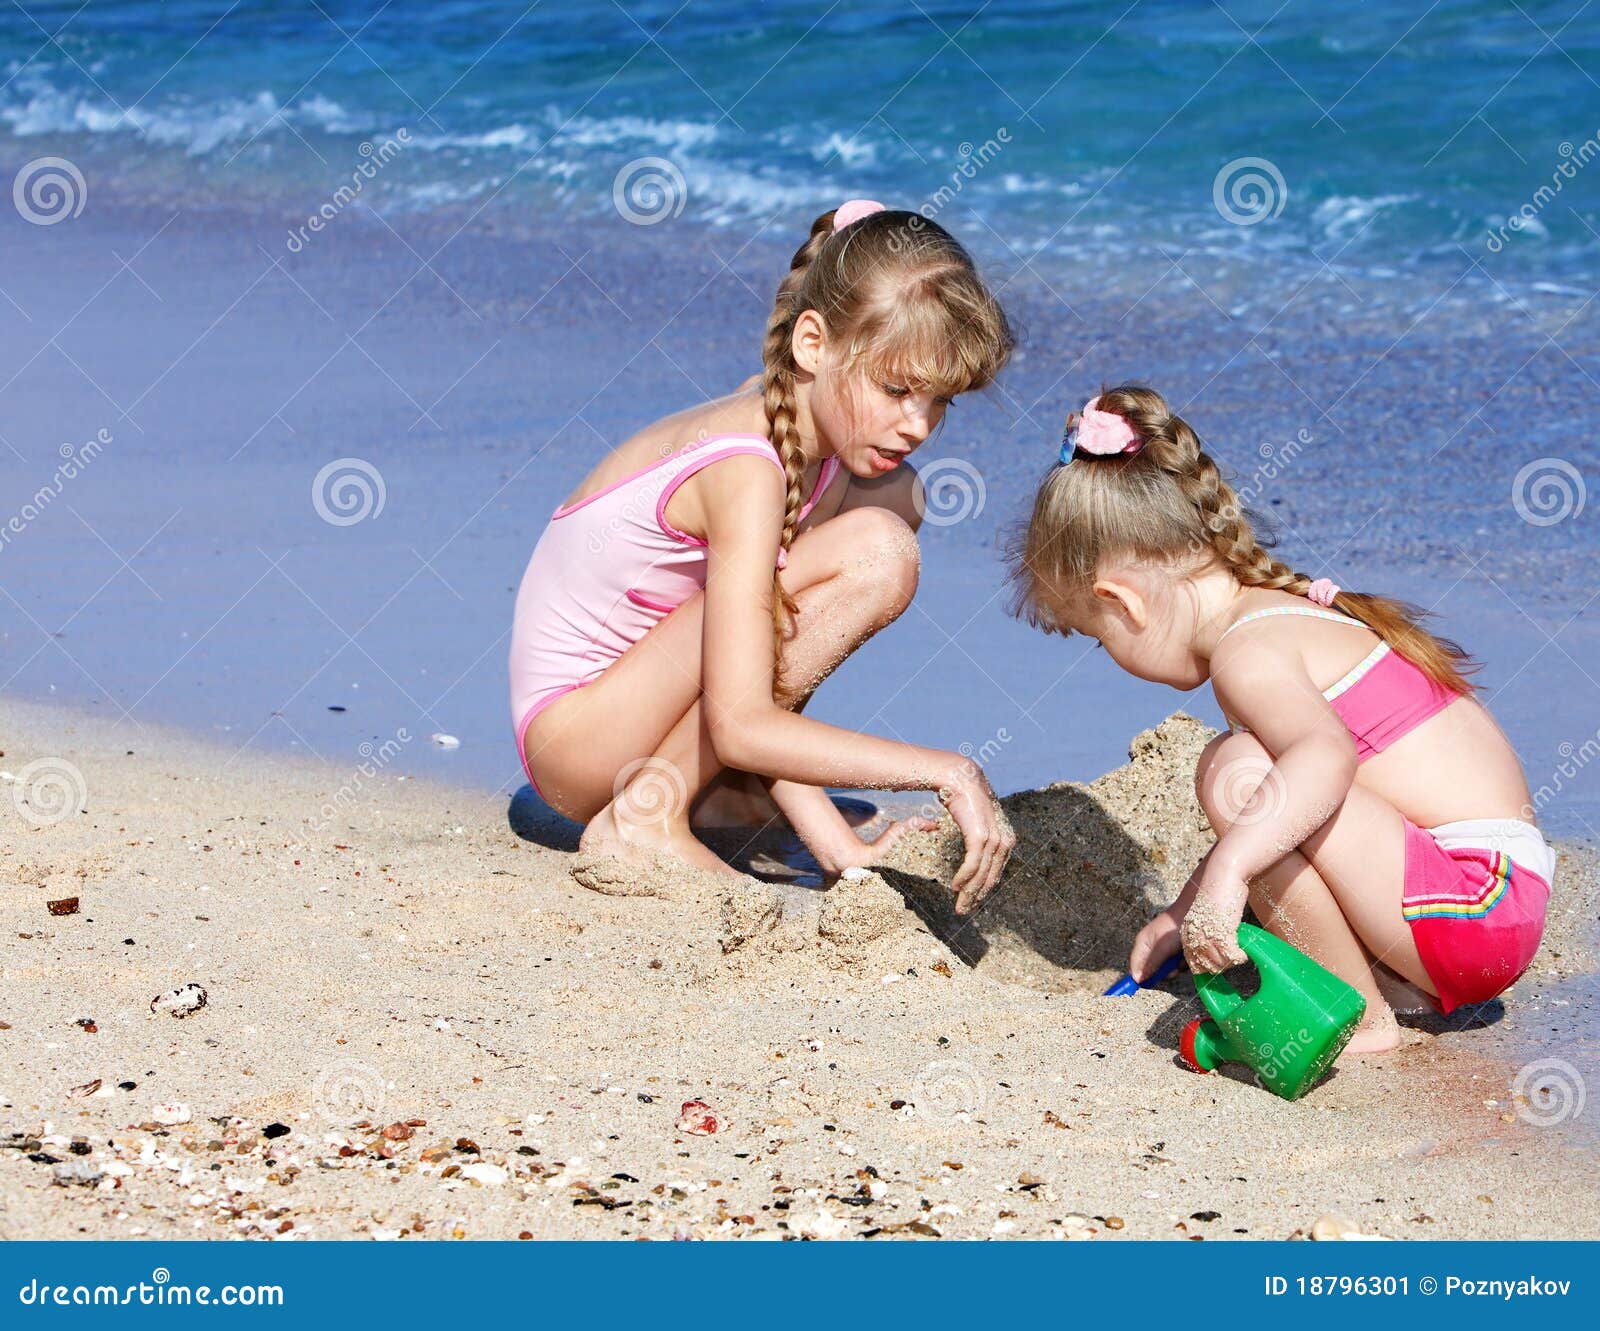 за голыми детьми на пляже фото 80